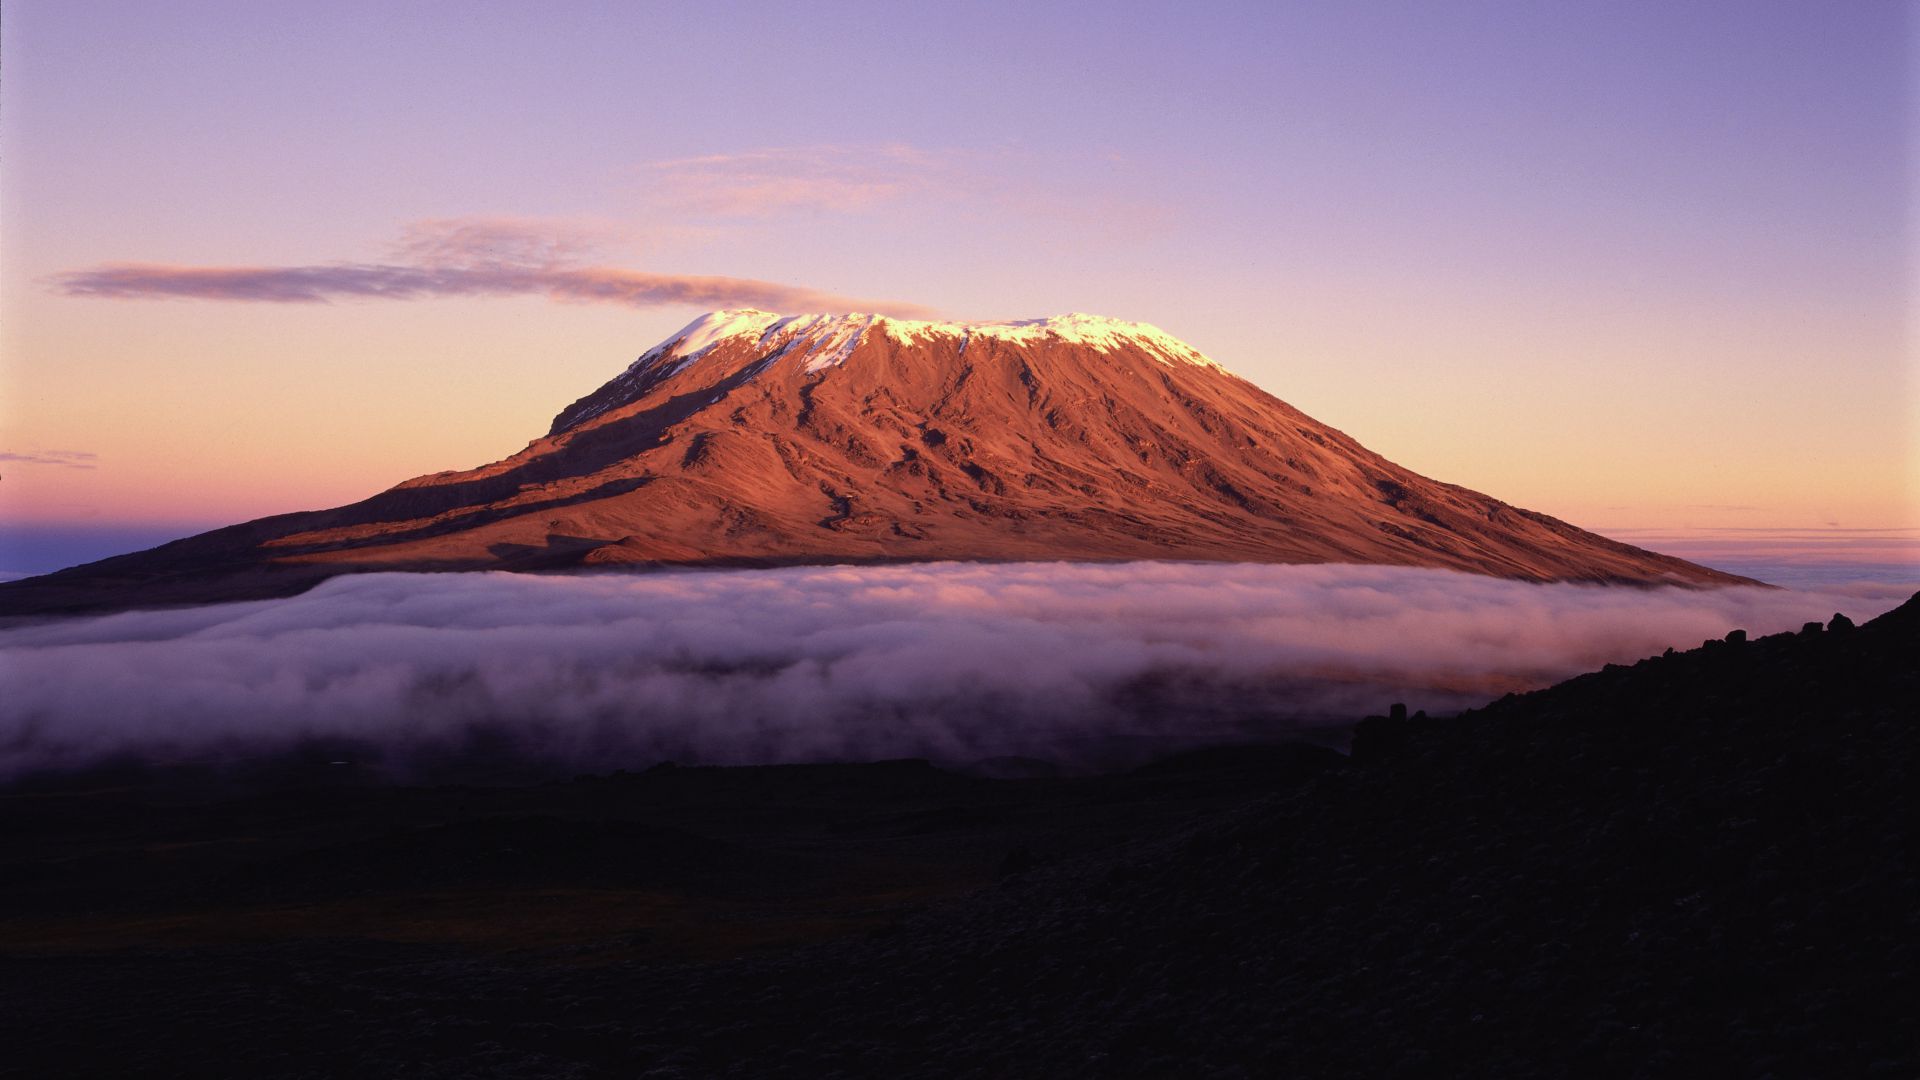 Килиманджаро, 5k, 4k, Африка, горы, небо, облака, Kilimanjaro, 5k, 4k wallpaper, Africa, mountains, sky, clouds (horizontal)